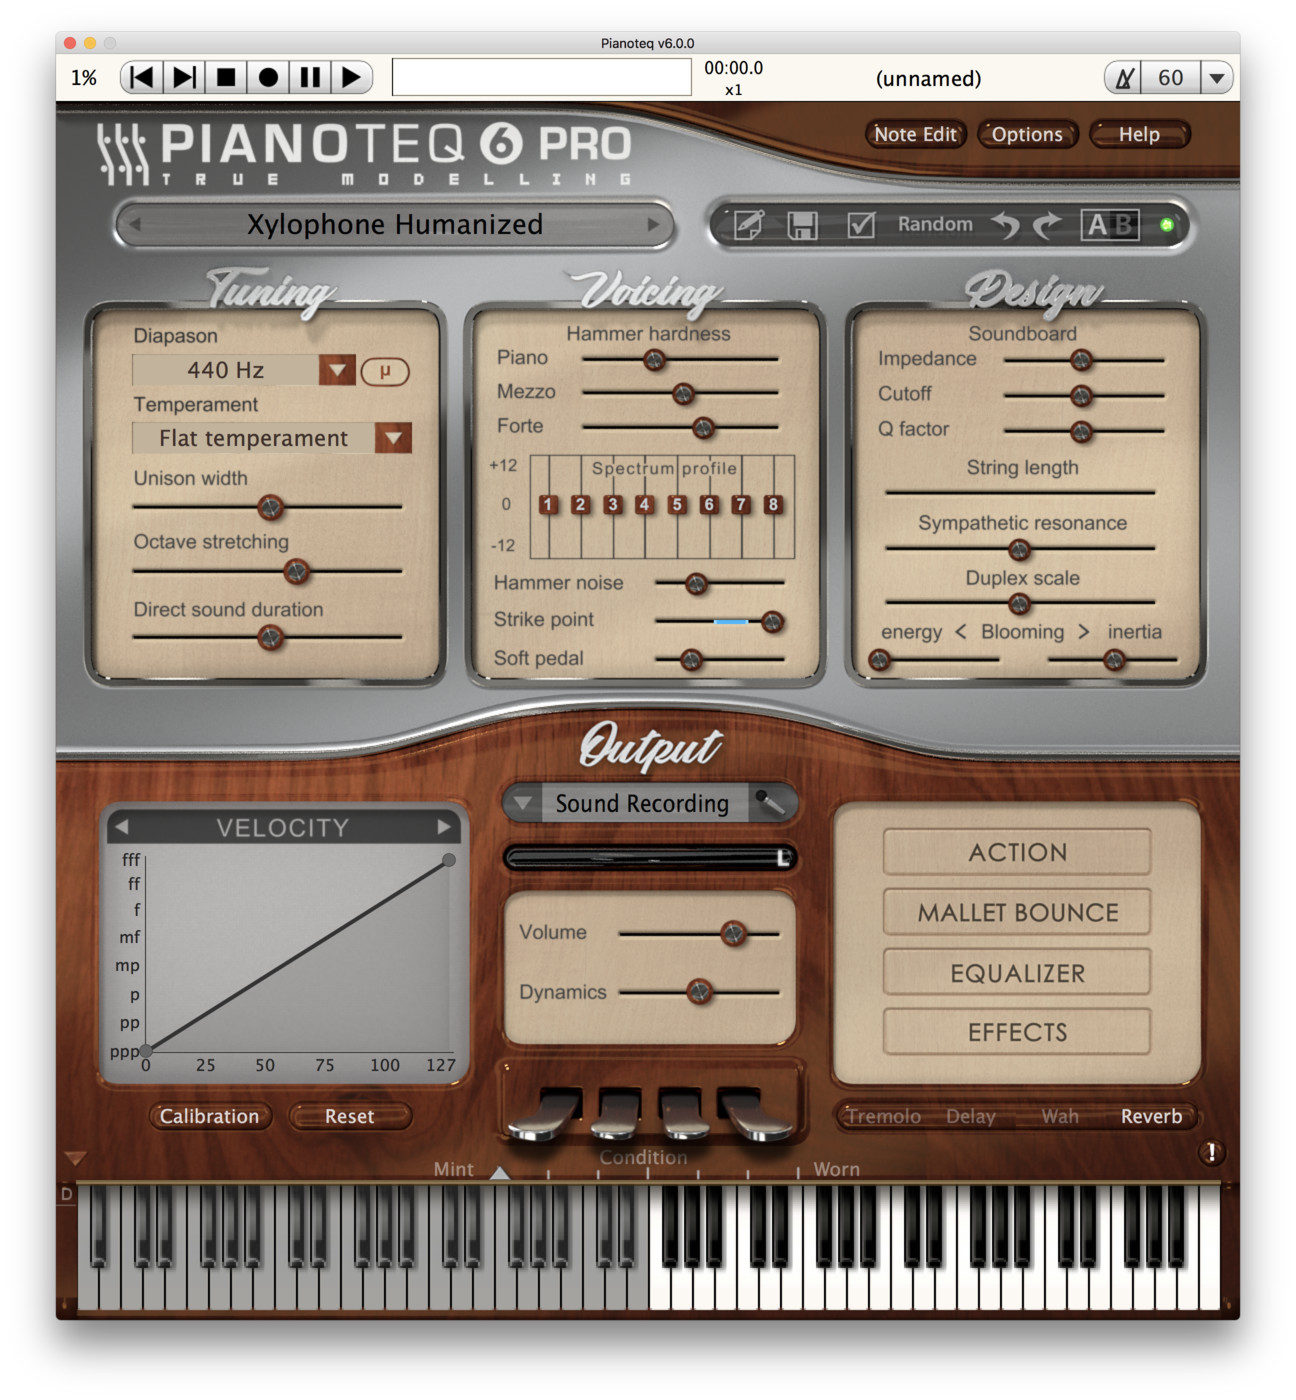 Xylo (Xylophone, Marimba) add-on for Pianoteq